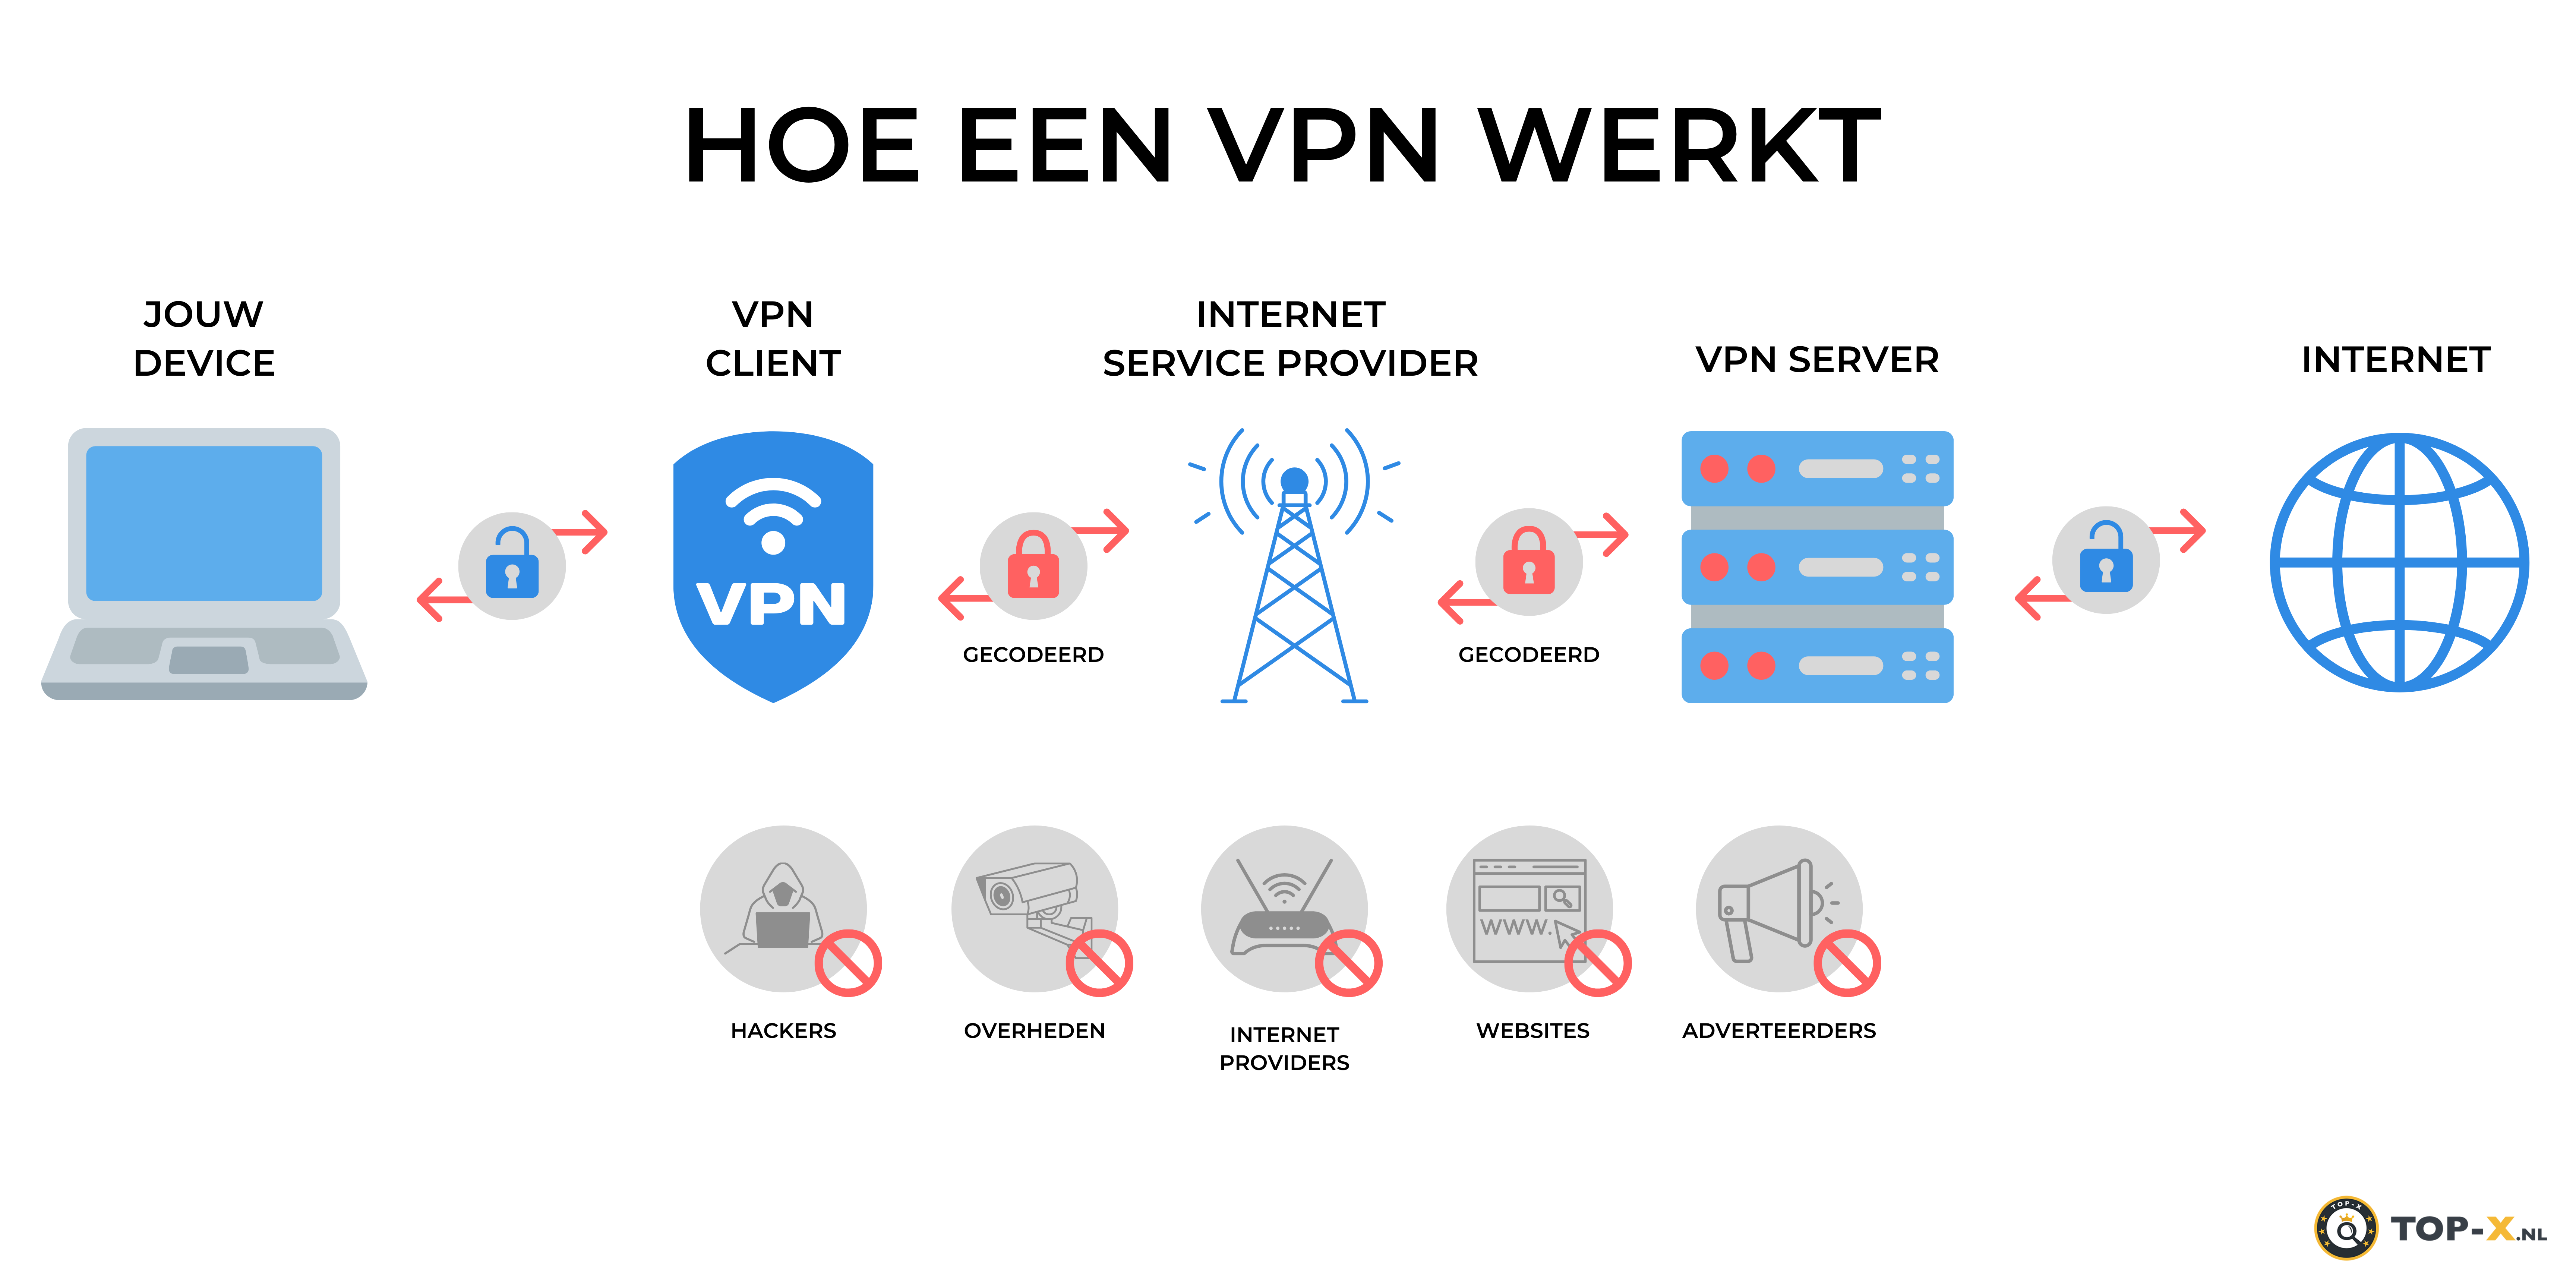 Hoe werkt een VPN